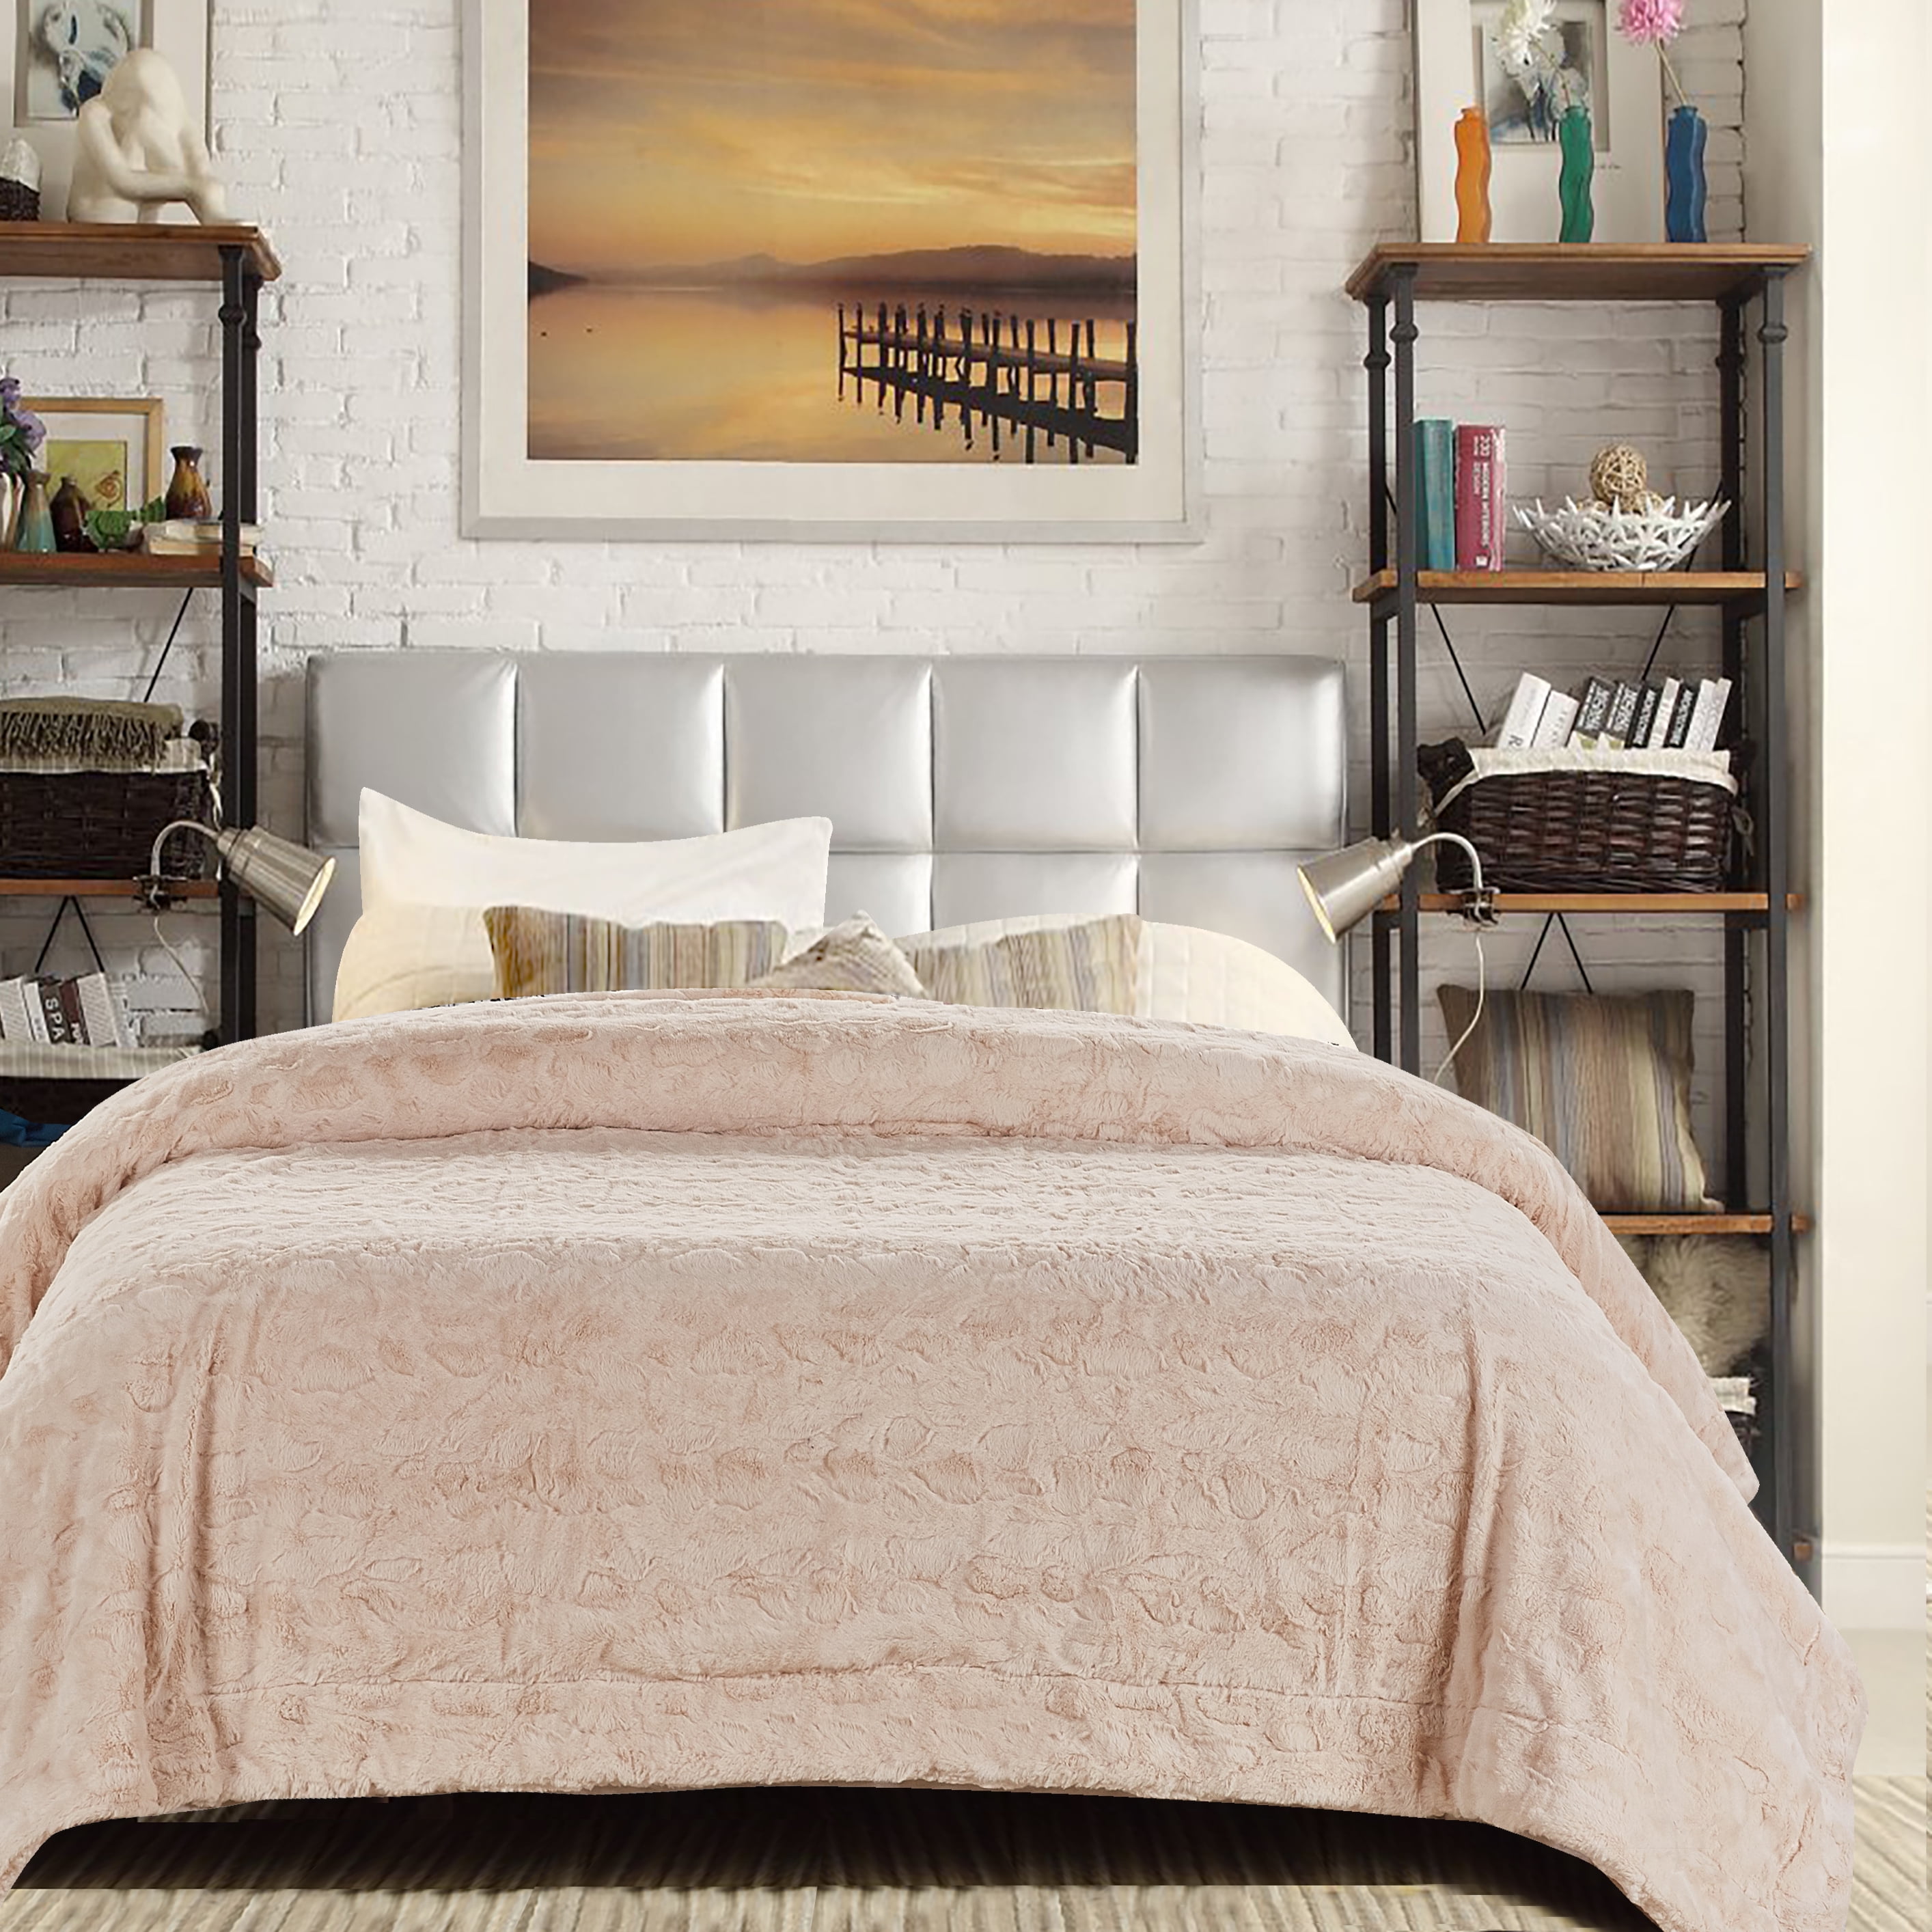 Blivener Super Soft Long Shaggy Throw Blanket Fluffy Faux Fur Blankets Warm Cozy Bedspread Light Grey 160 x 200 CM